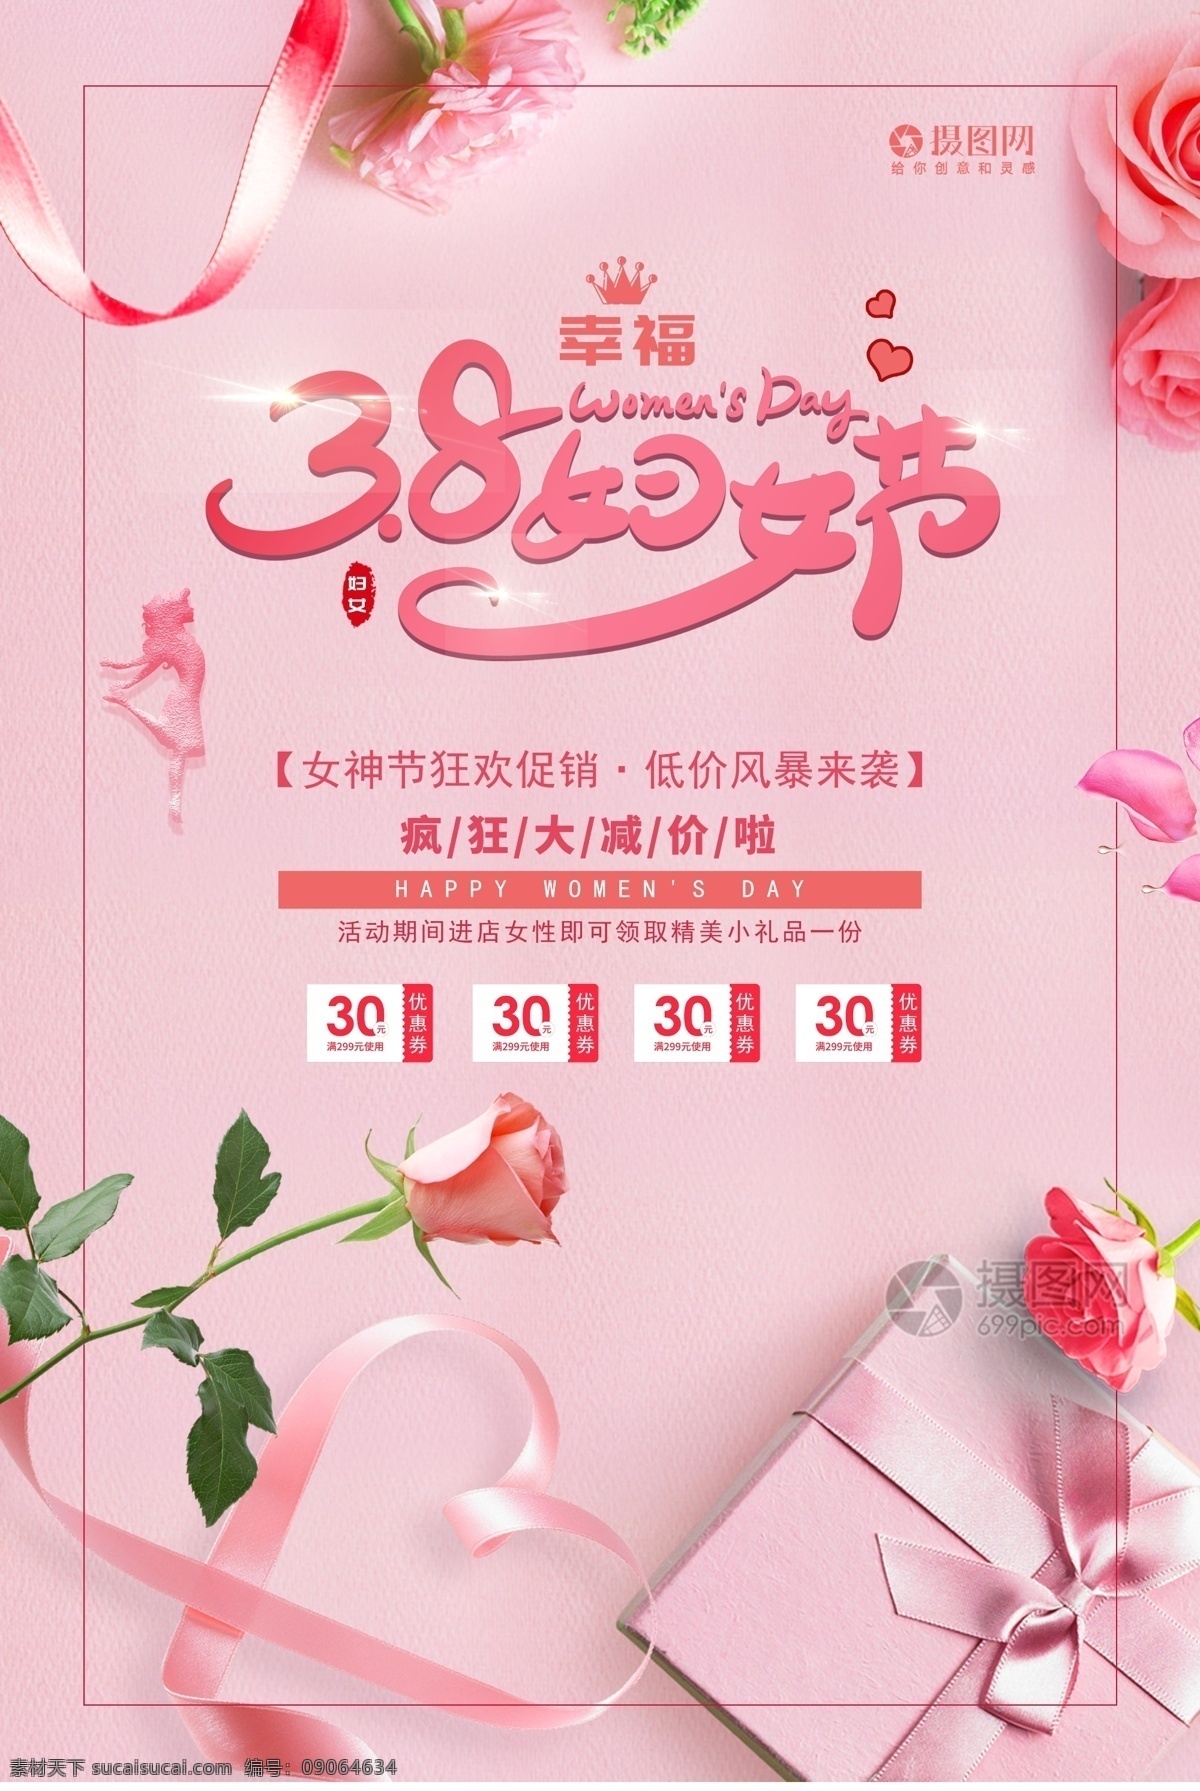 粉色 妇女节 促销 海报 妇女节促销 玫瑰 唯美 妇女节快乐 女神节 女神节快乐 节日海报